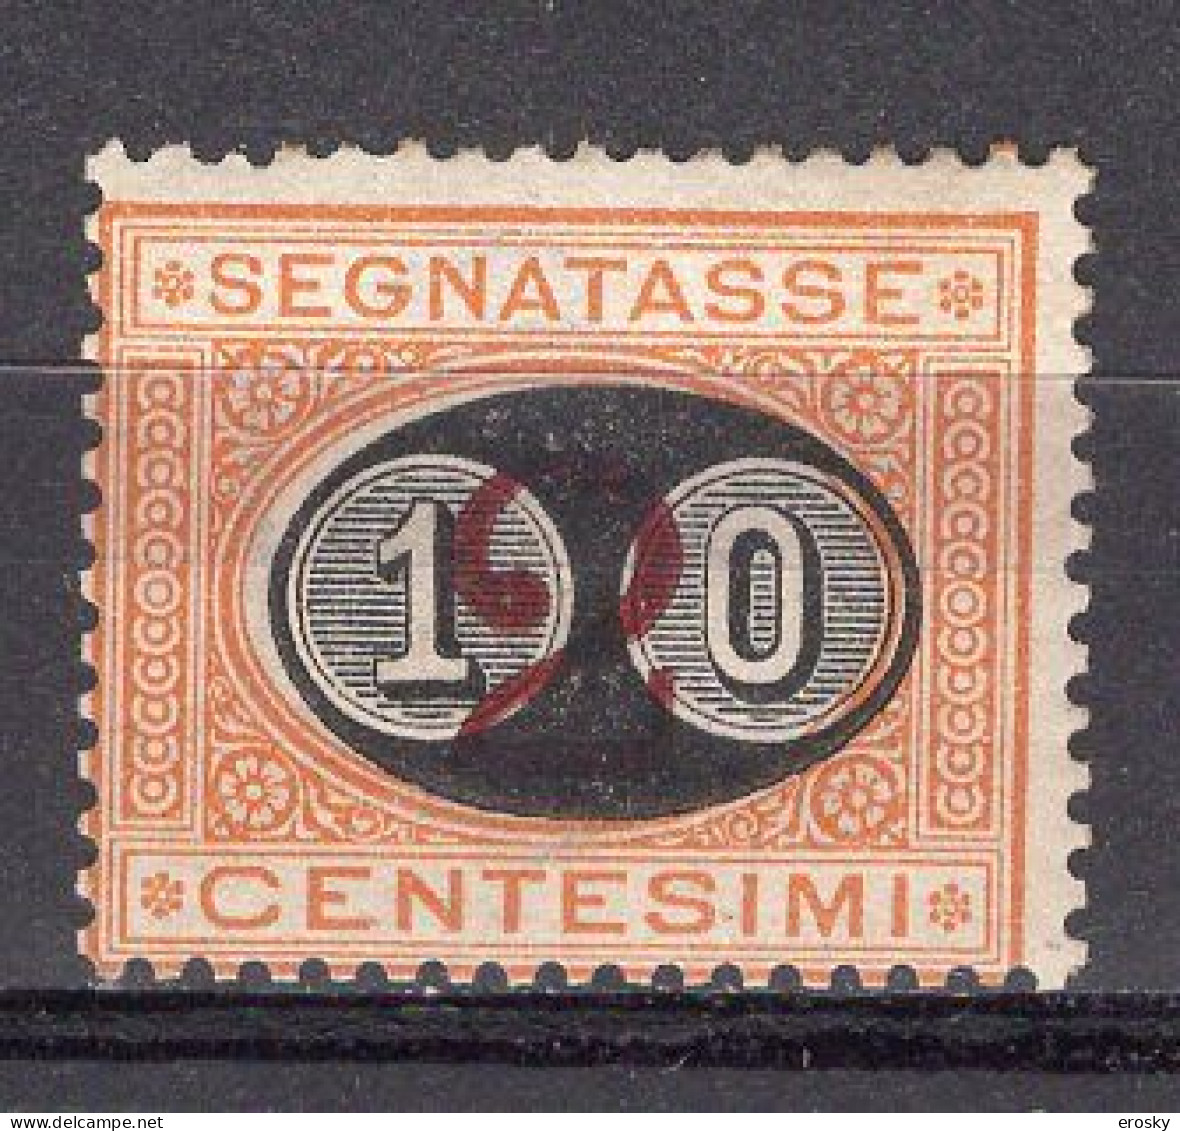 Z6160 - ITALIA REGNO TASSE SASSONE N°17 *  Firme - Portomarken